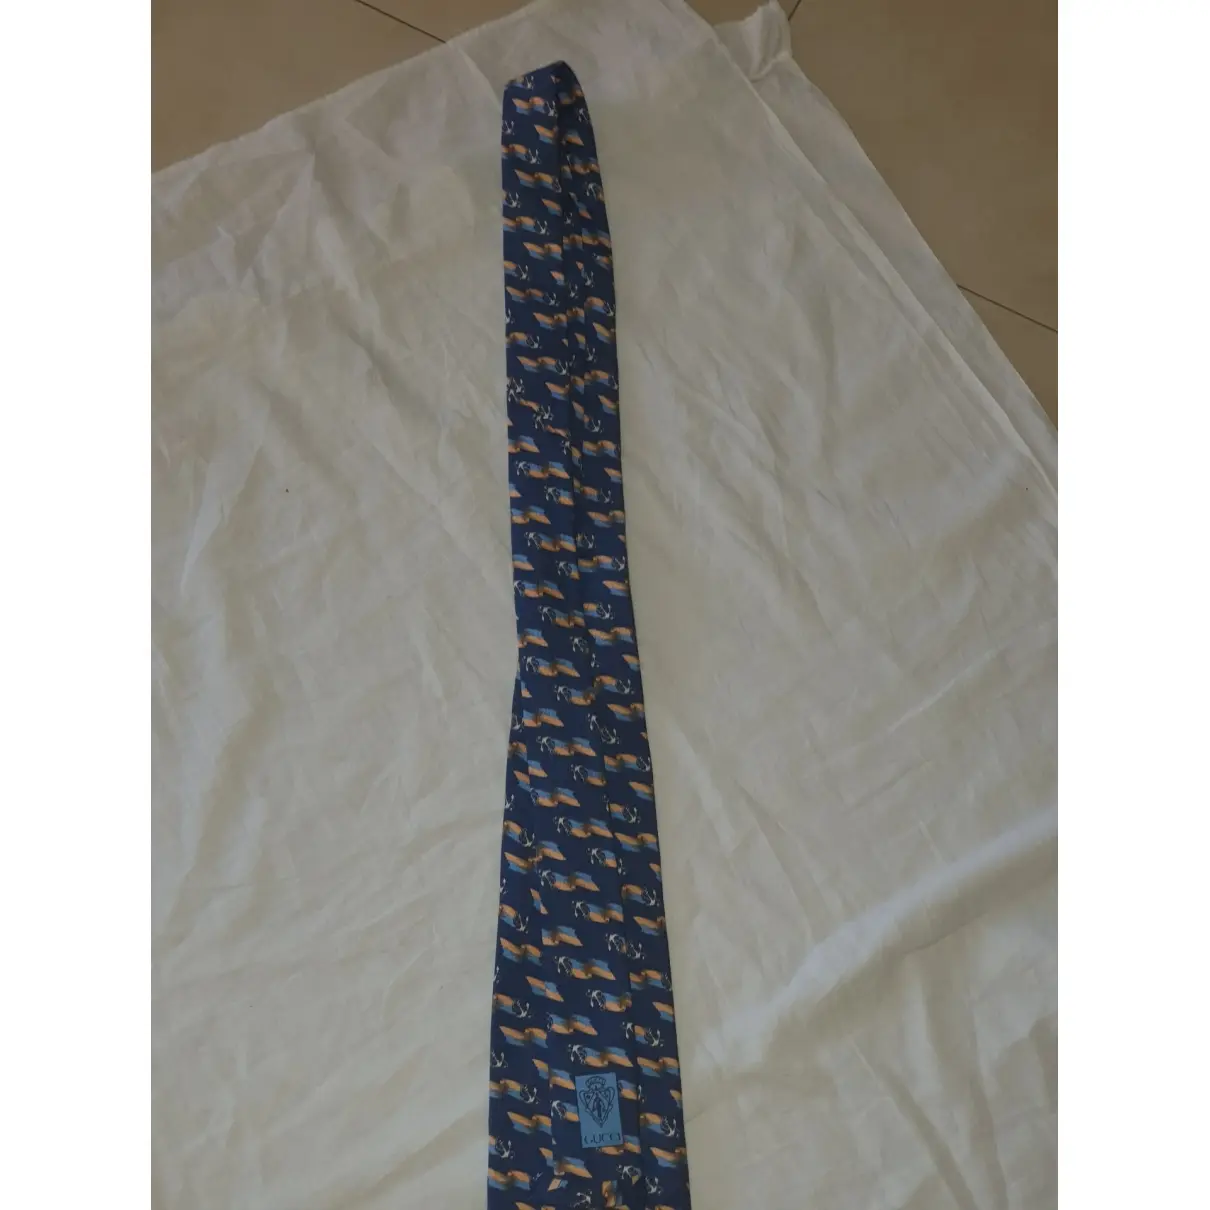 Gucci Silk tie for sale - Vintage